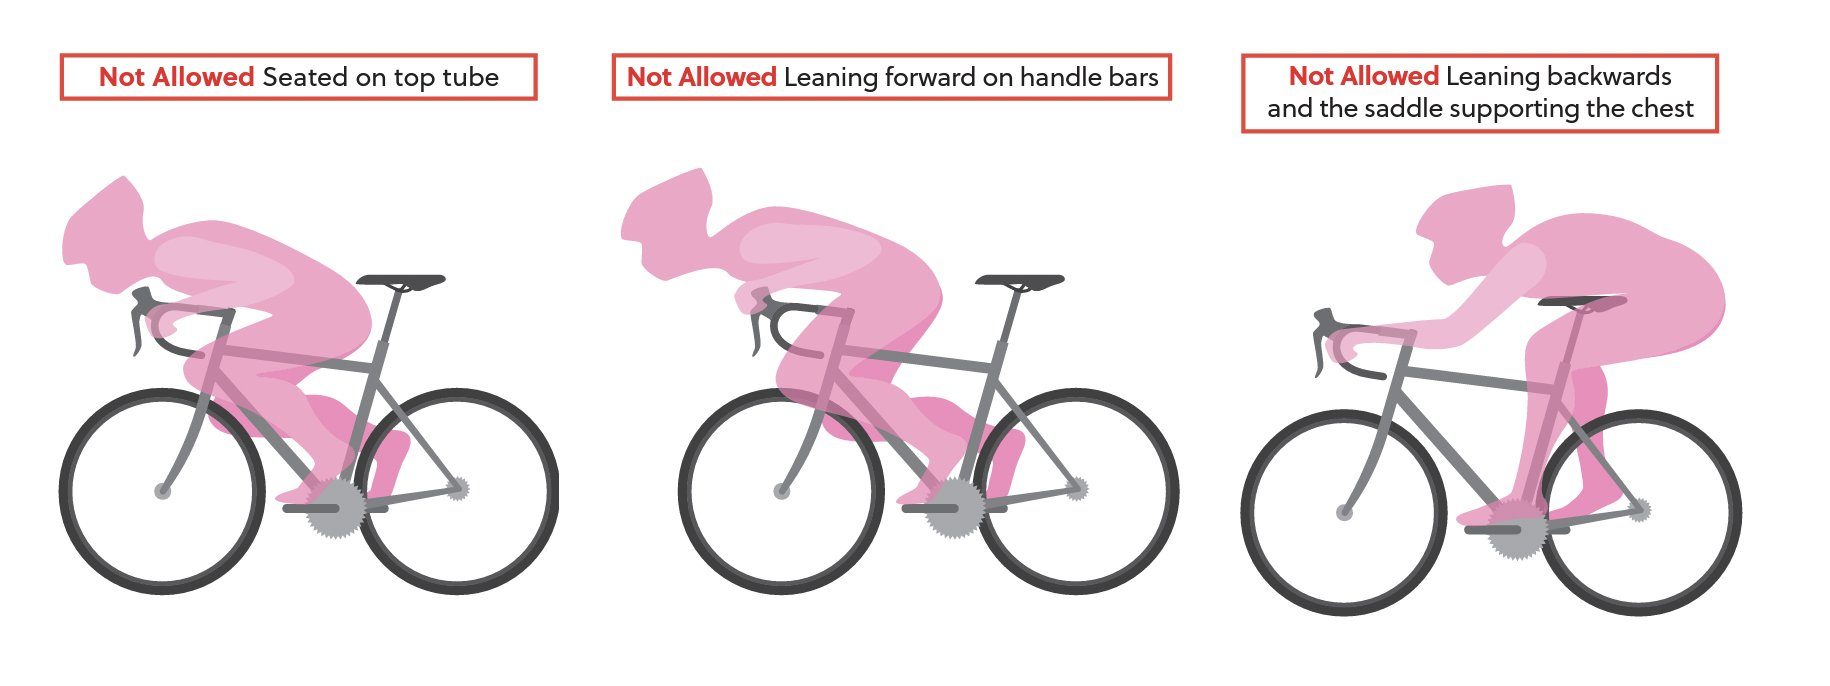 UCI опубликовал обновлённые правила безопасности в профессиональном велоспорте